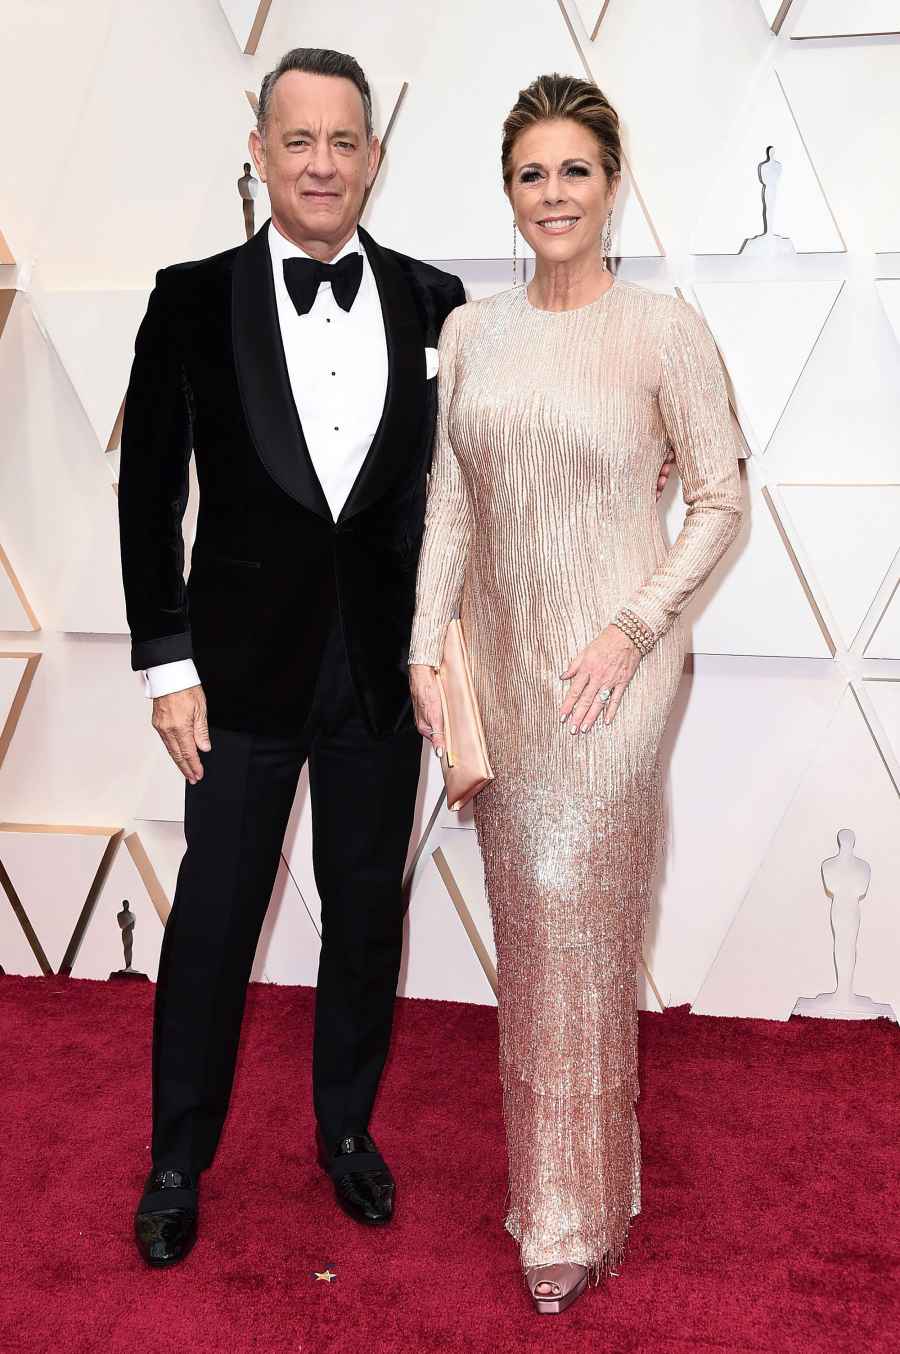 Oscars 2020 Best Dressed Men - Tom Hanks